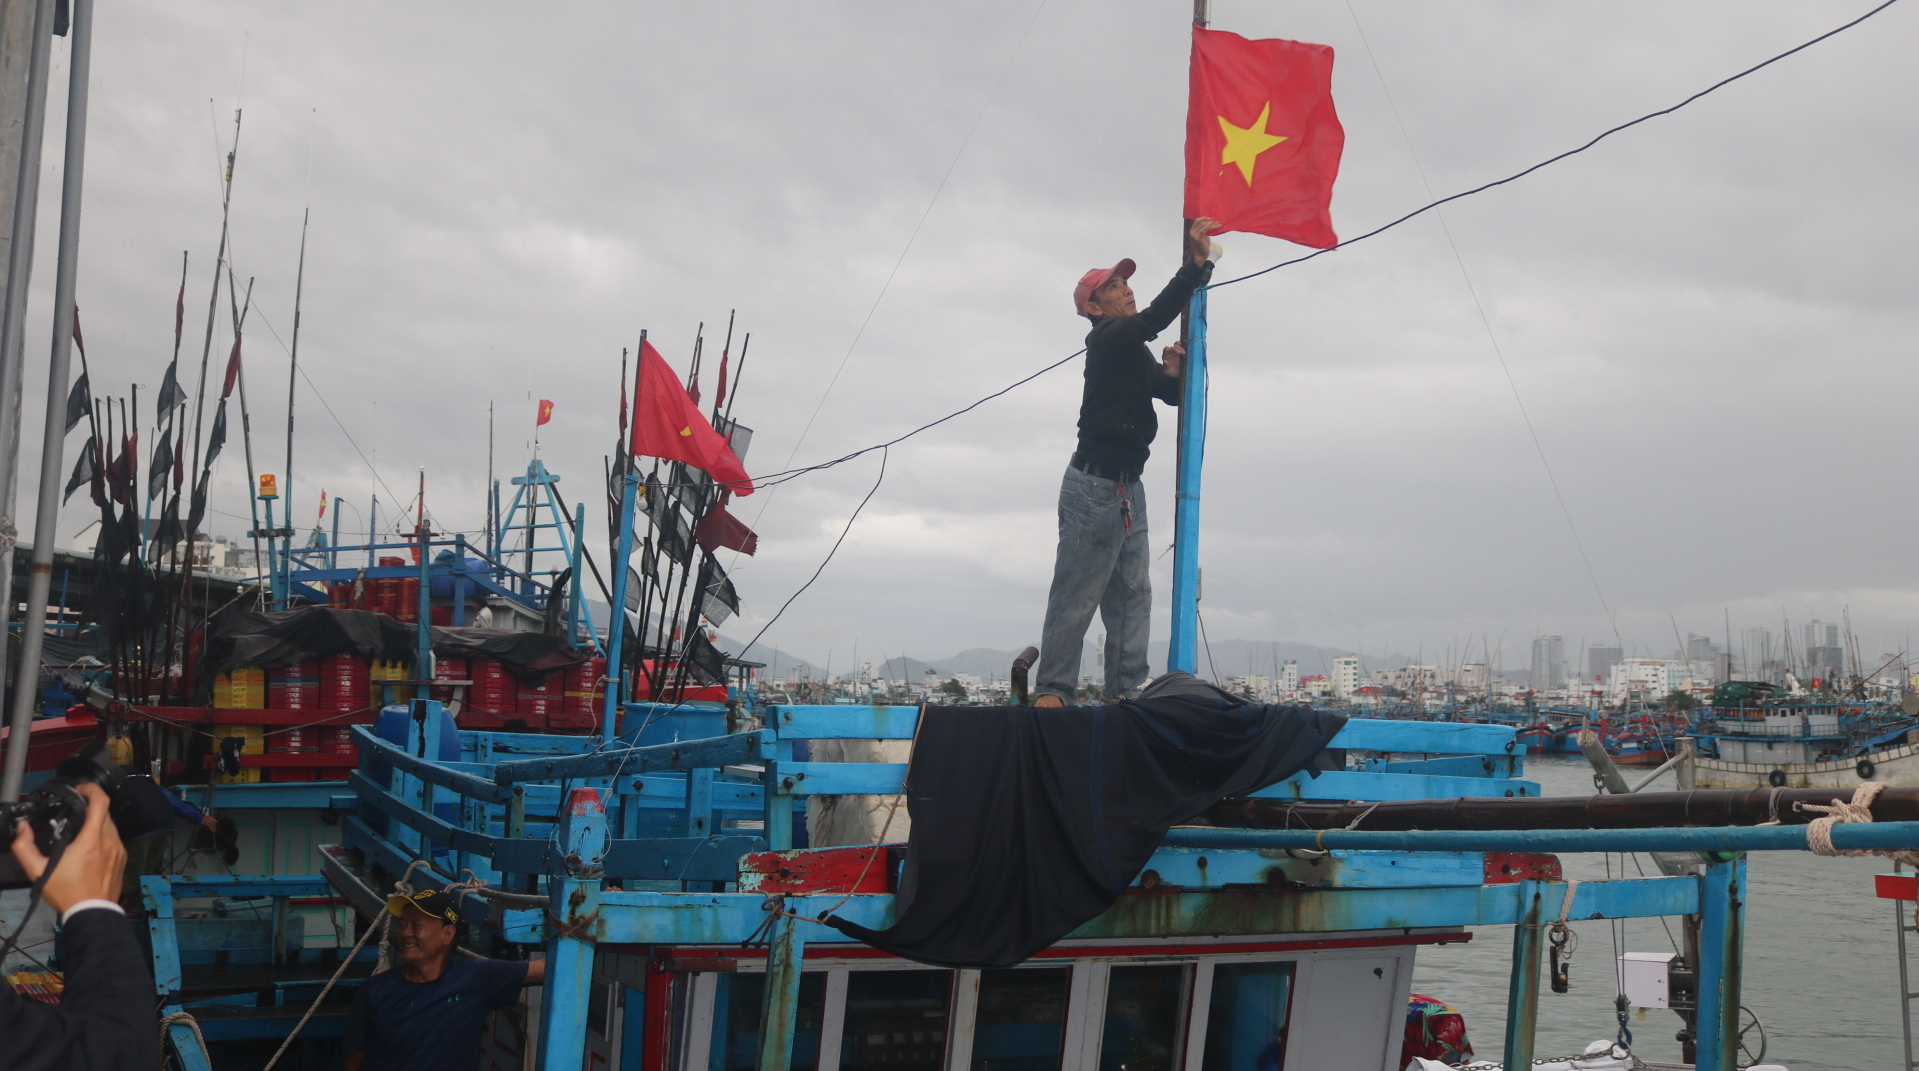 Thời gian qua, ngư dân Khánh Hòa ngày đêm bám biển vừa phát triển kinh tế, vừa bảo vệ chủ quyền biển đảo của Tổ quốc. Ảnh: KS.